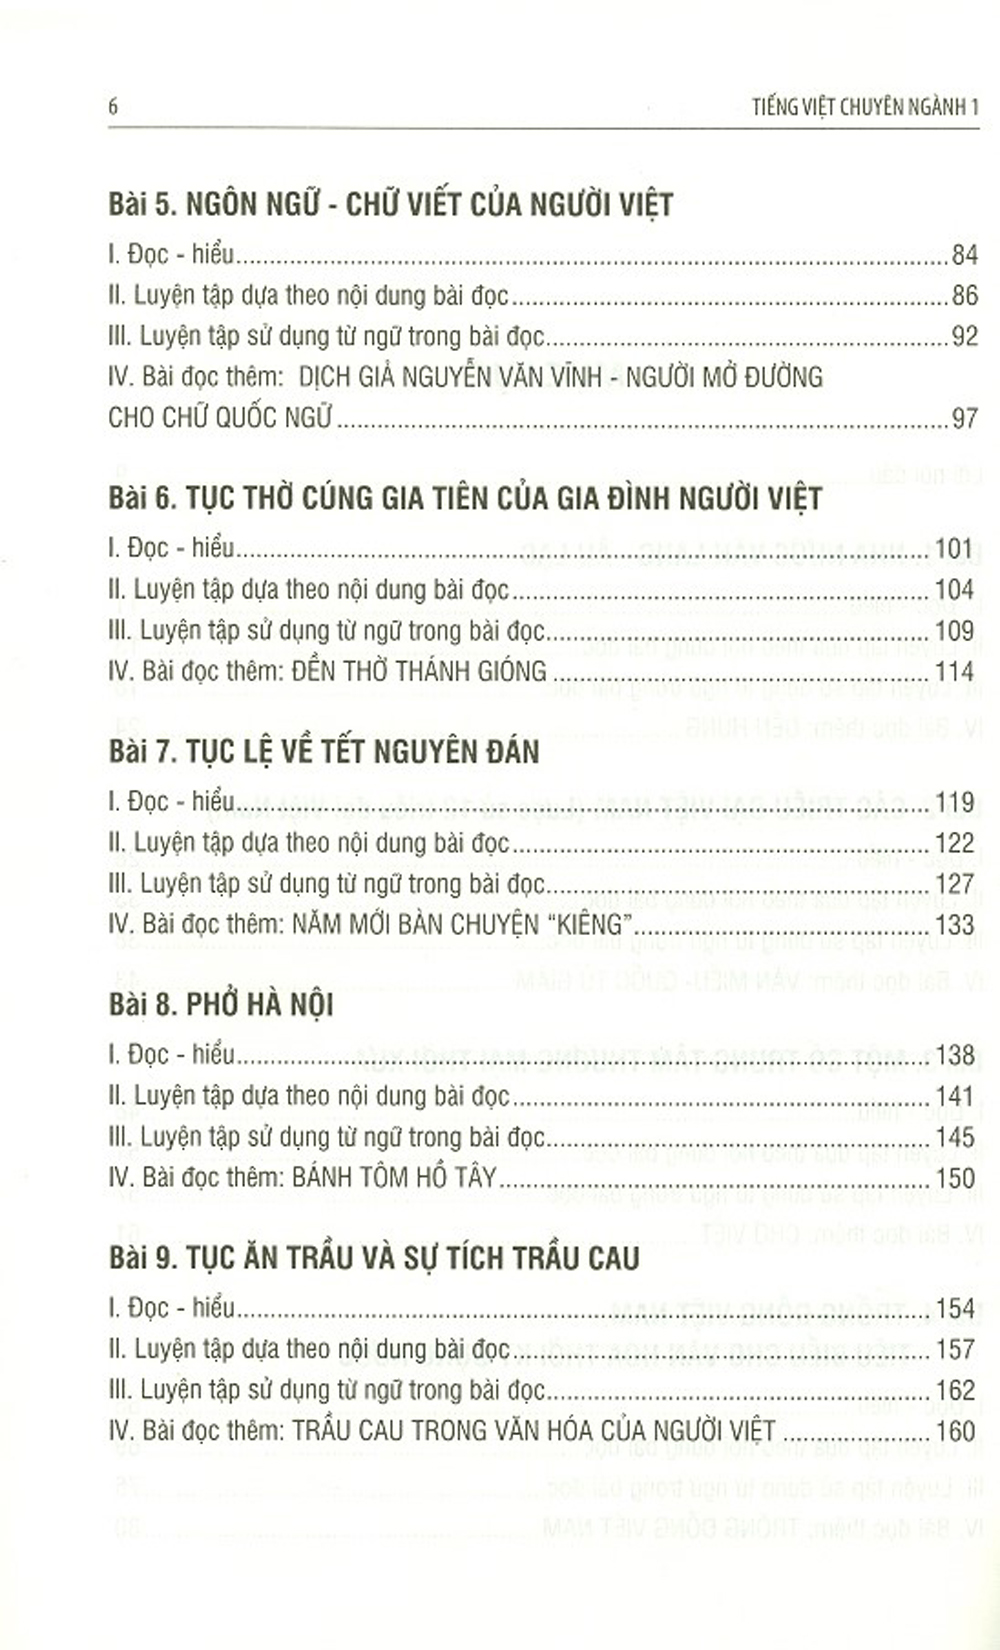 Tiếng Việt Chuyên Ngành 1: Văn Hóa - Lịch Sử (Giáo Trình Dành Cho Cử Nhân Ngành Việt Nam Học)